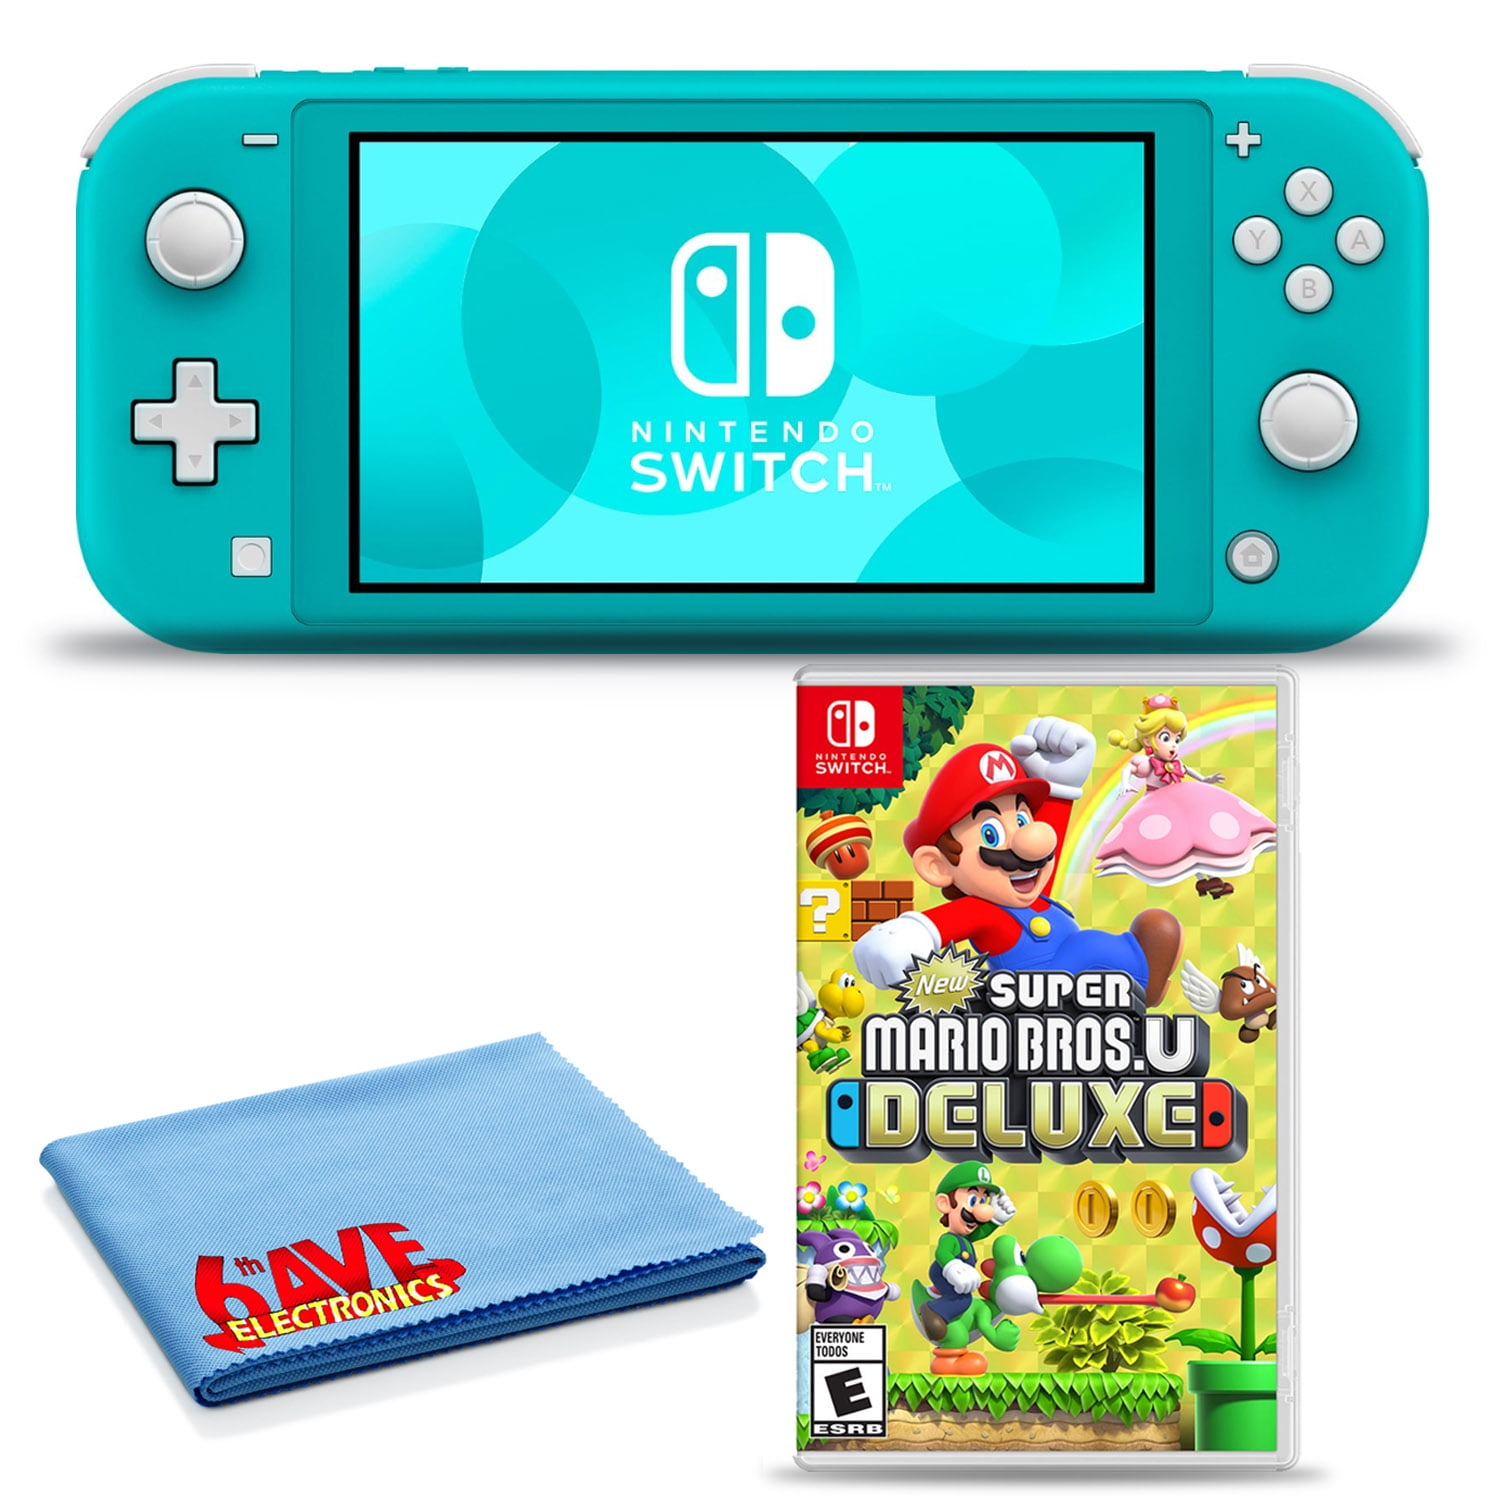 Nintendo Switch Lite ターコイズ(新品未開封)